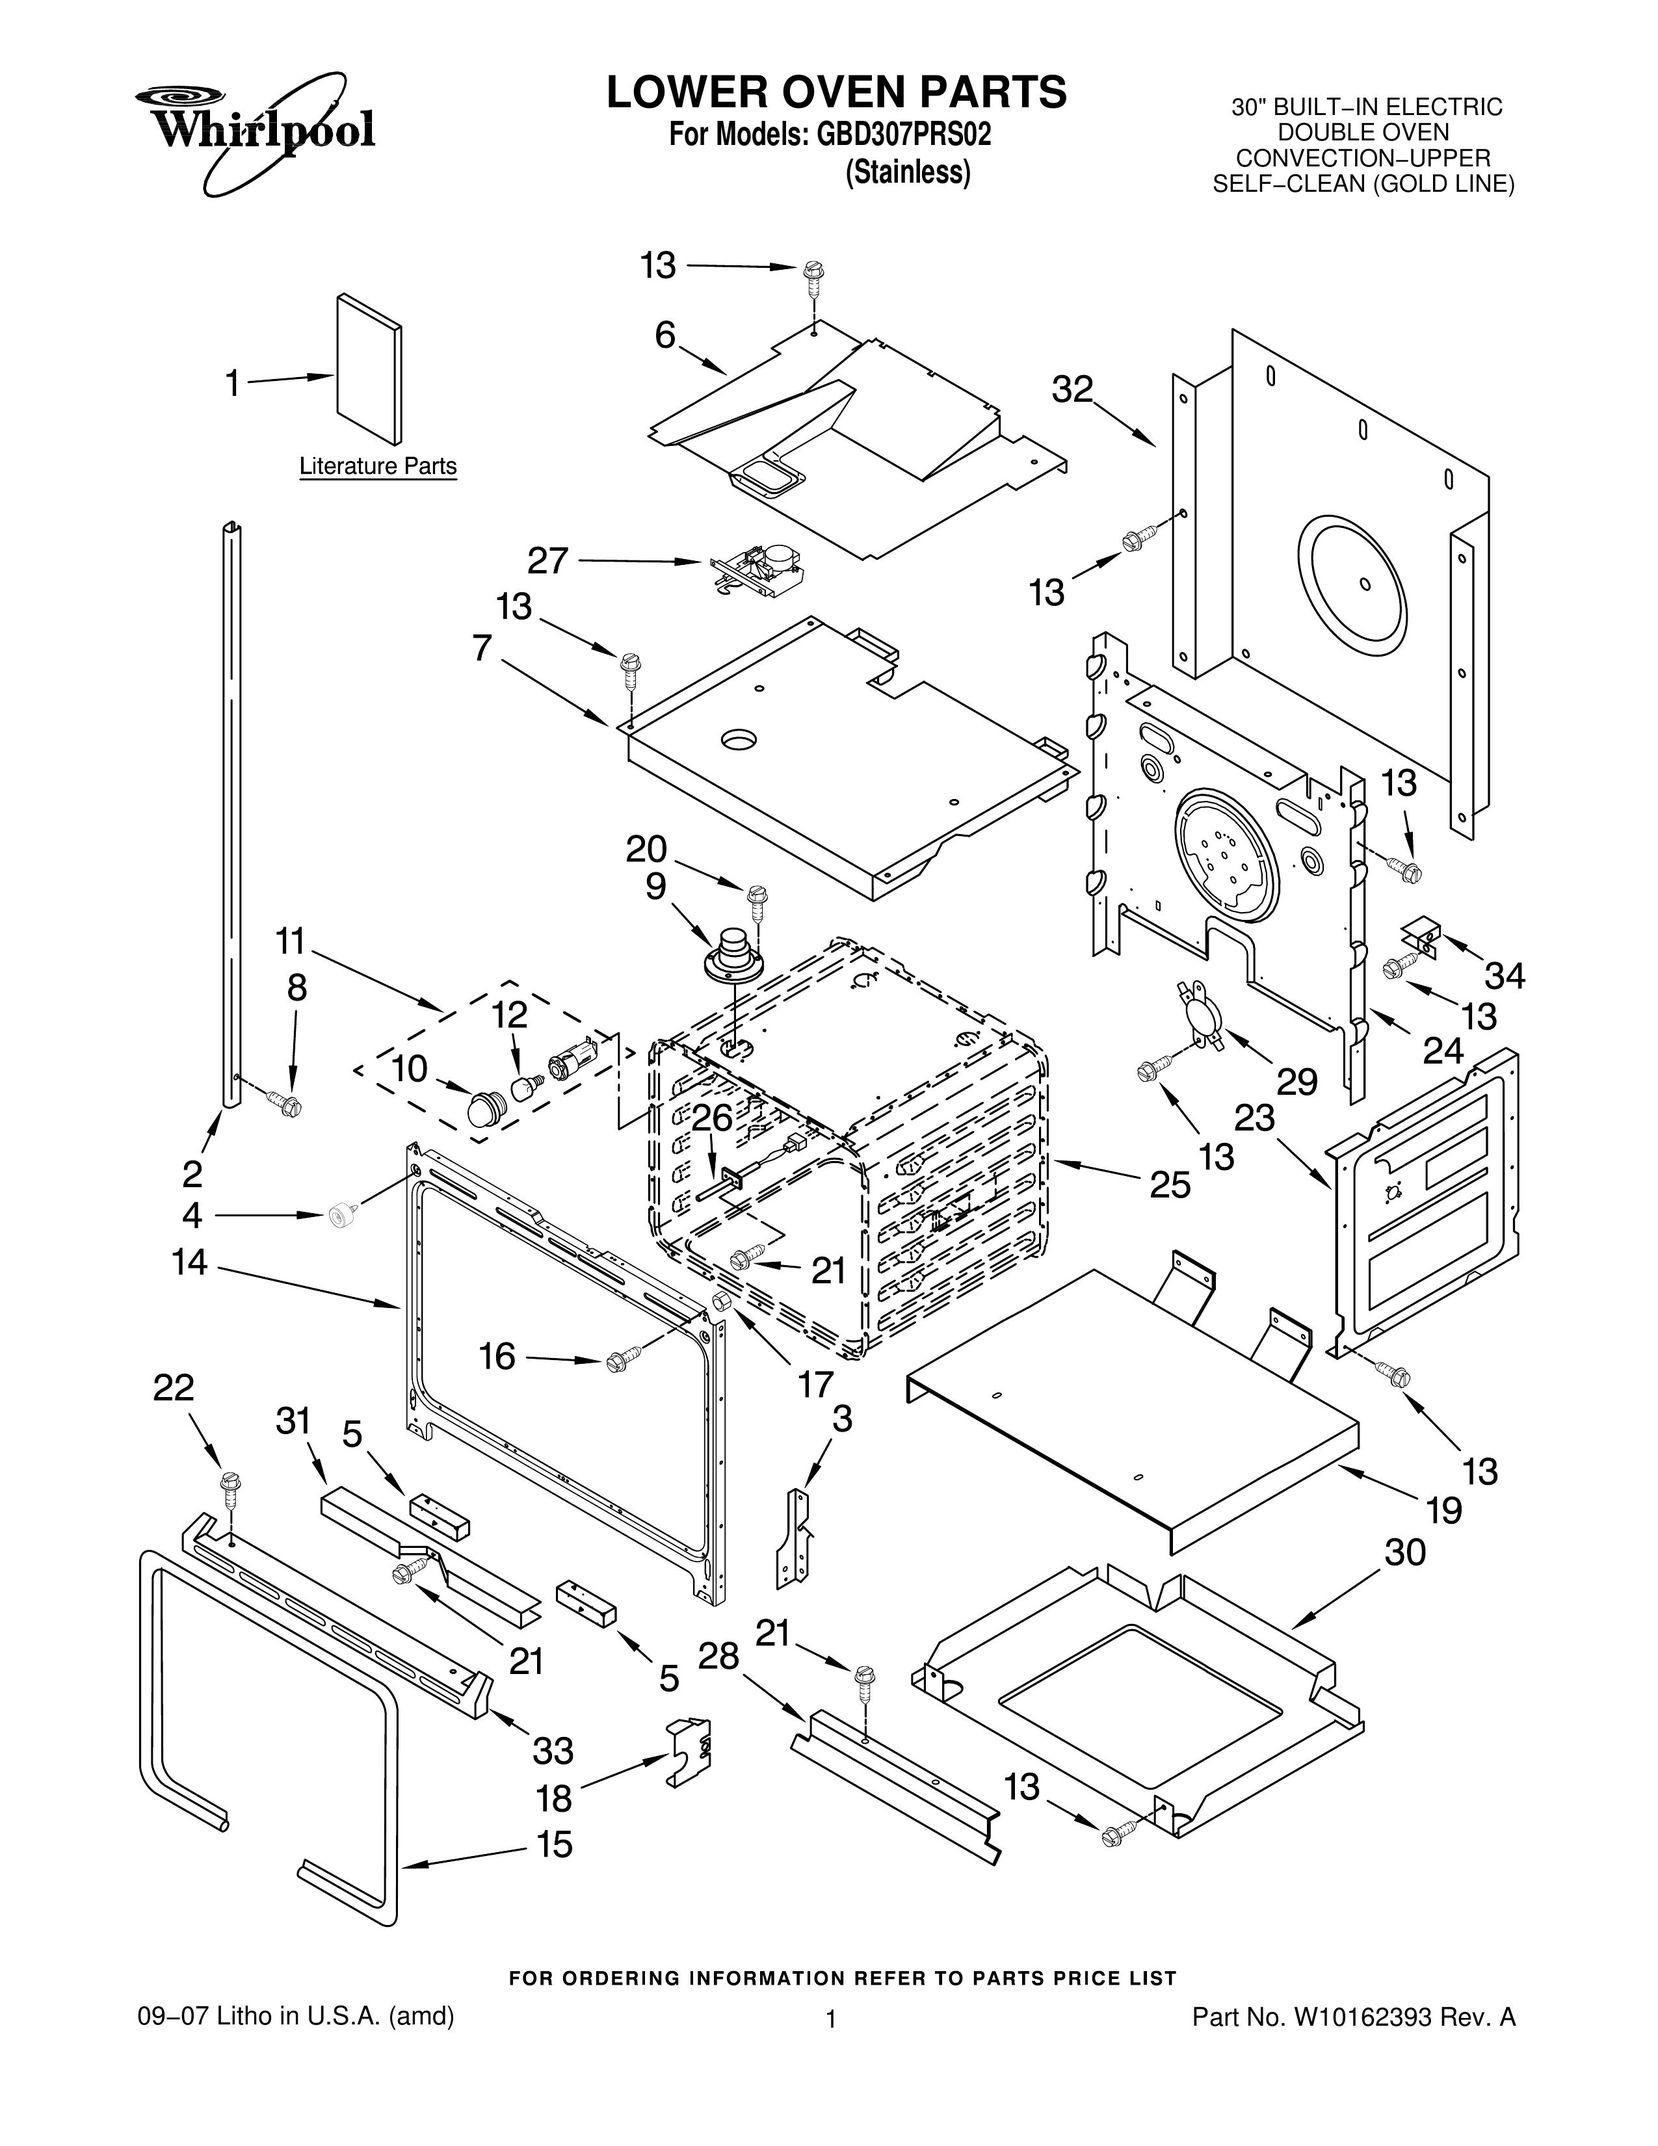 Whirlpool GBD307PRS02 Oven User Manual